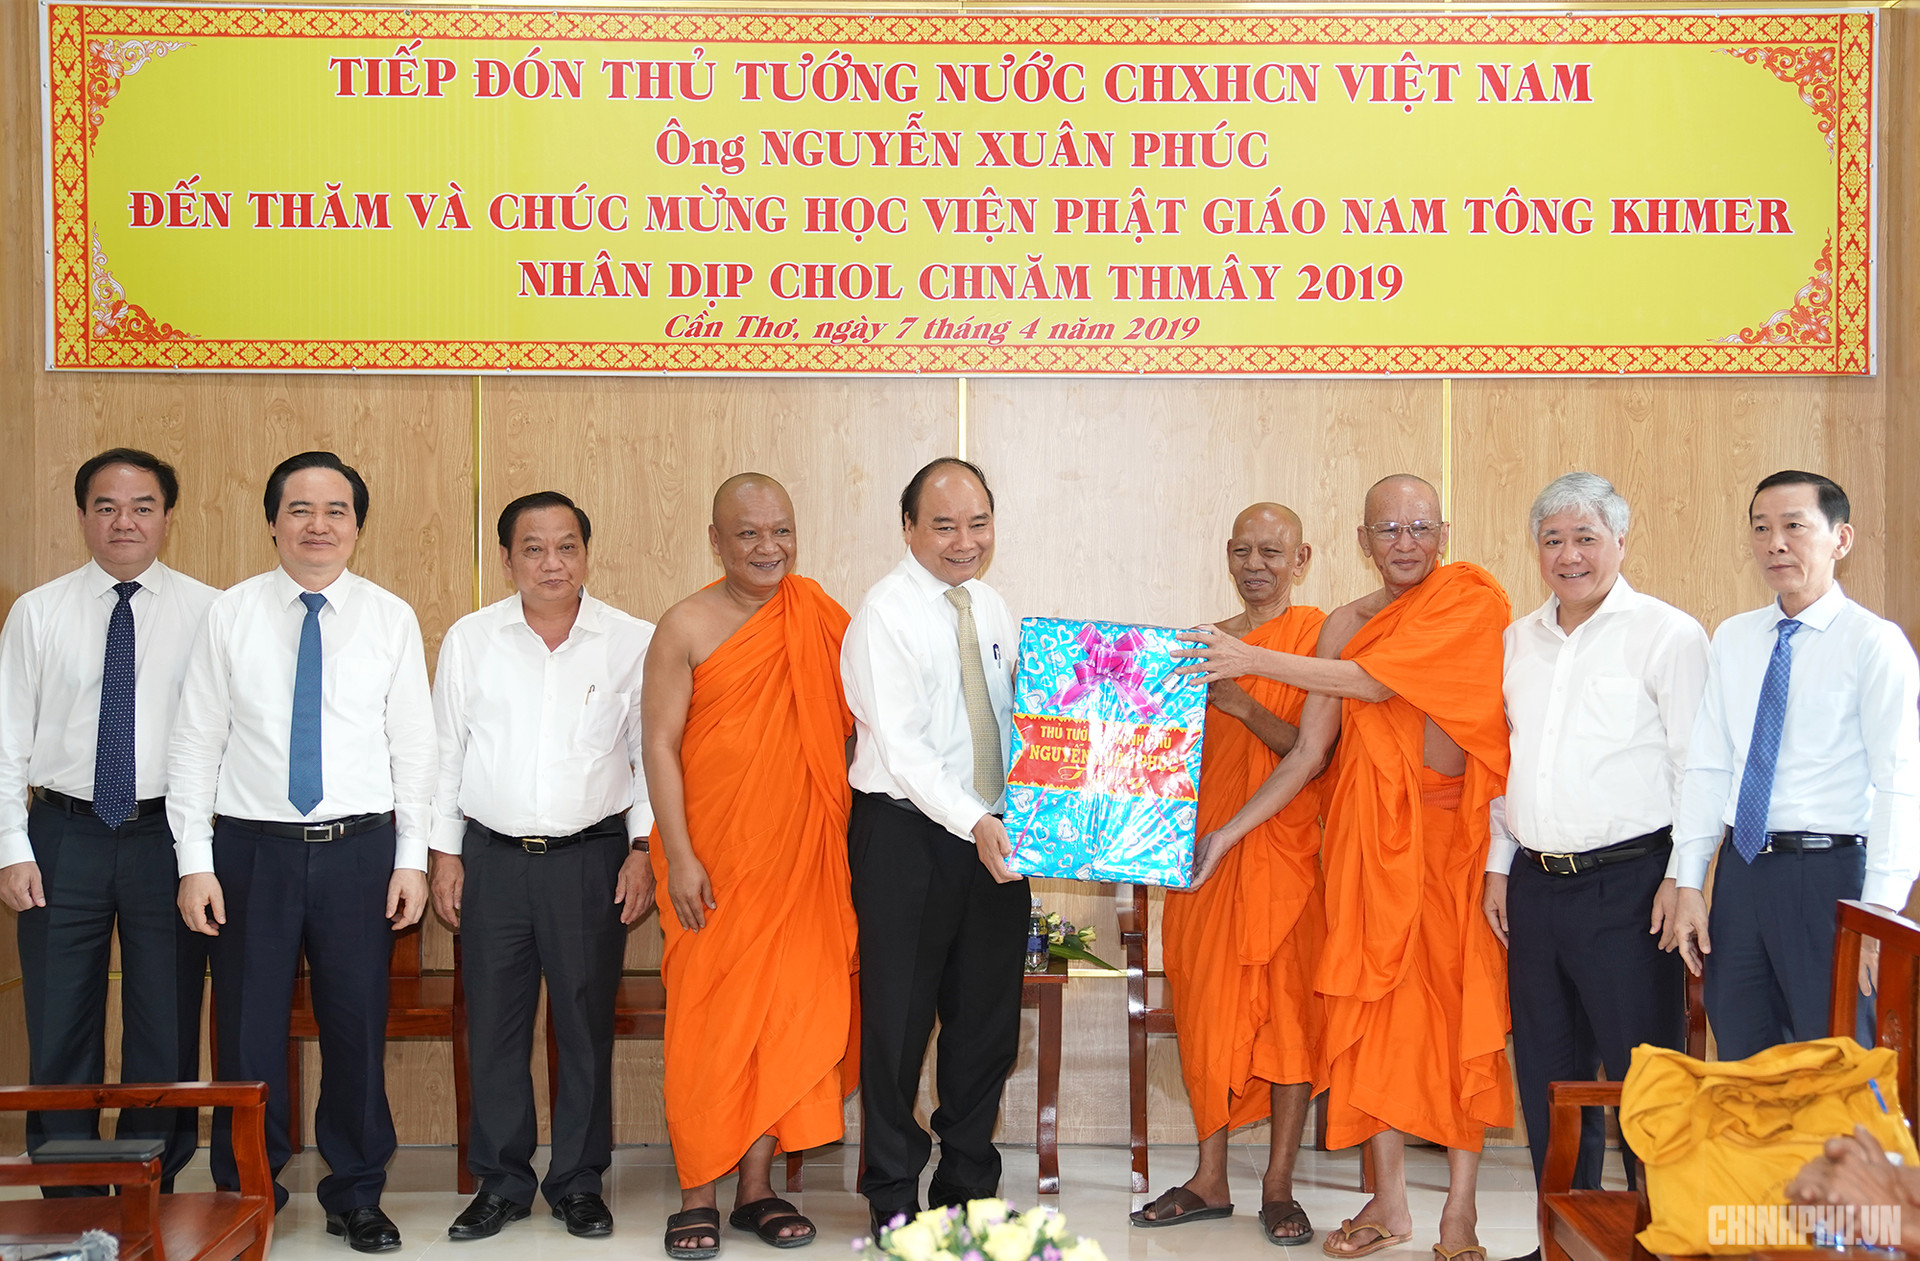 Thủ tướng Nguyễn Xuân Phúc thăm Học viện Phật giáo Nam tông Khmer